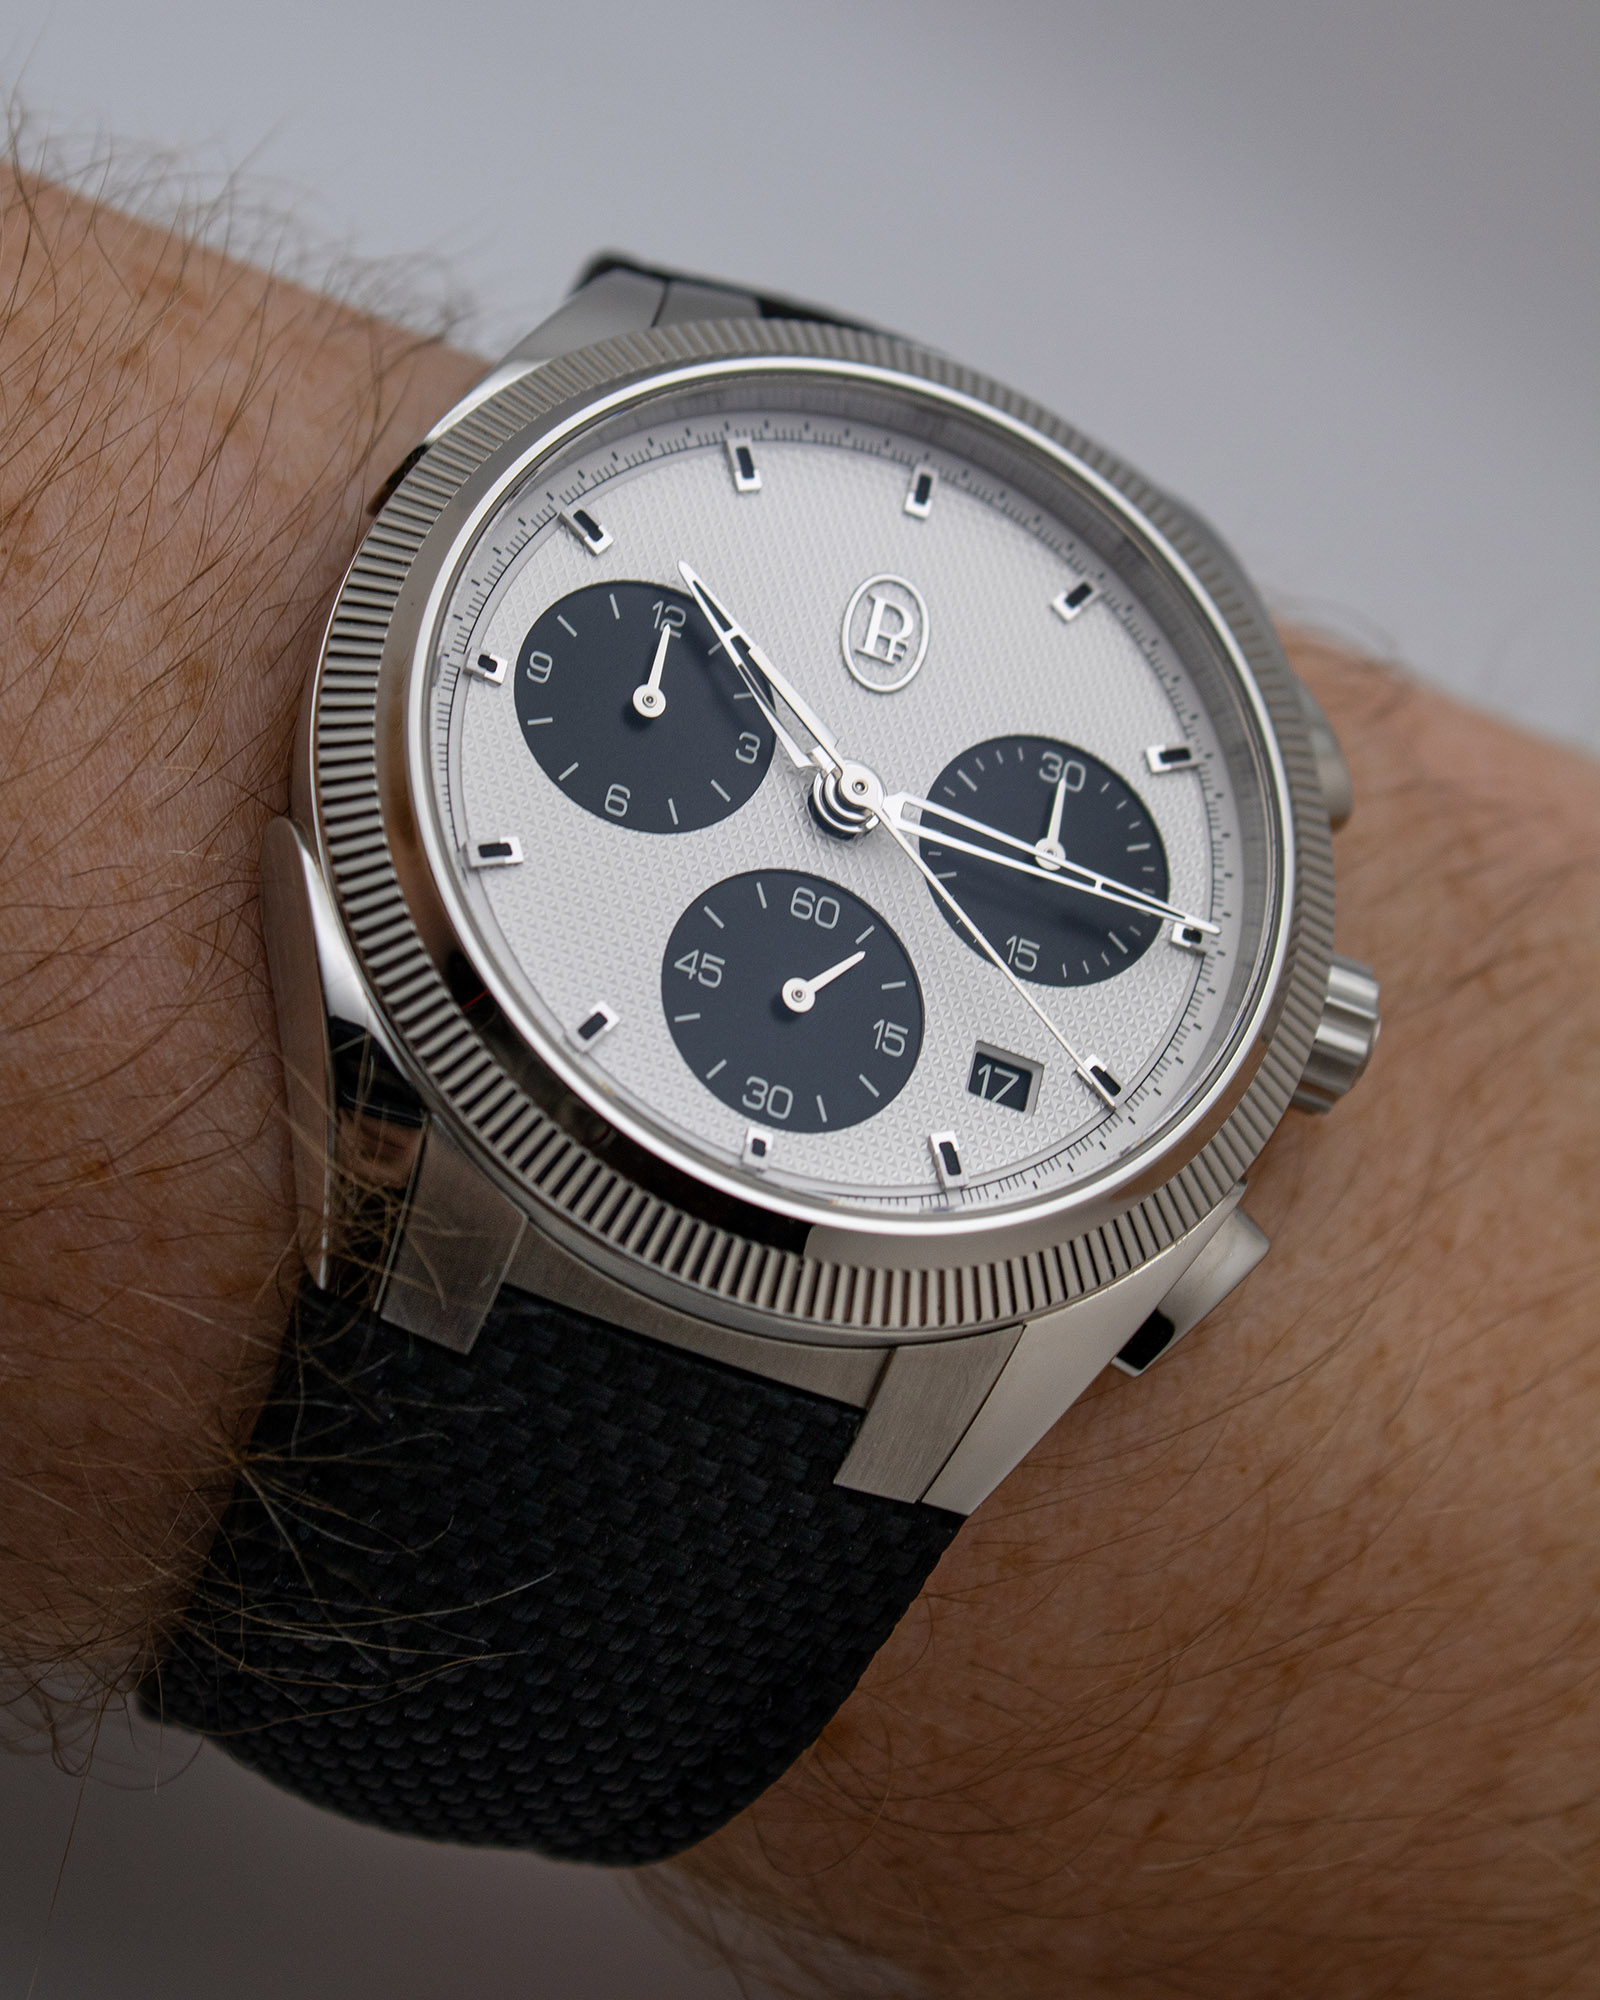 Спортивные часы с хронографом Parmigiani Tonda PF